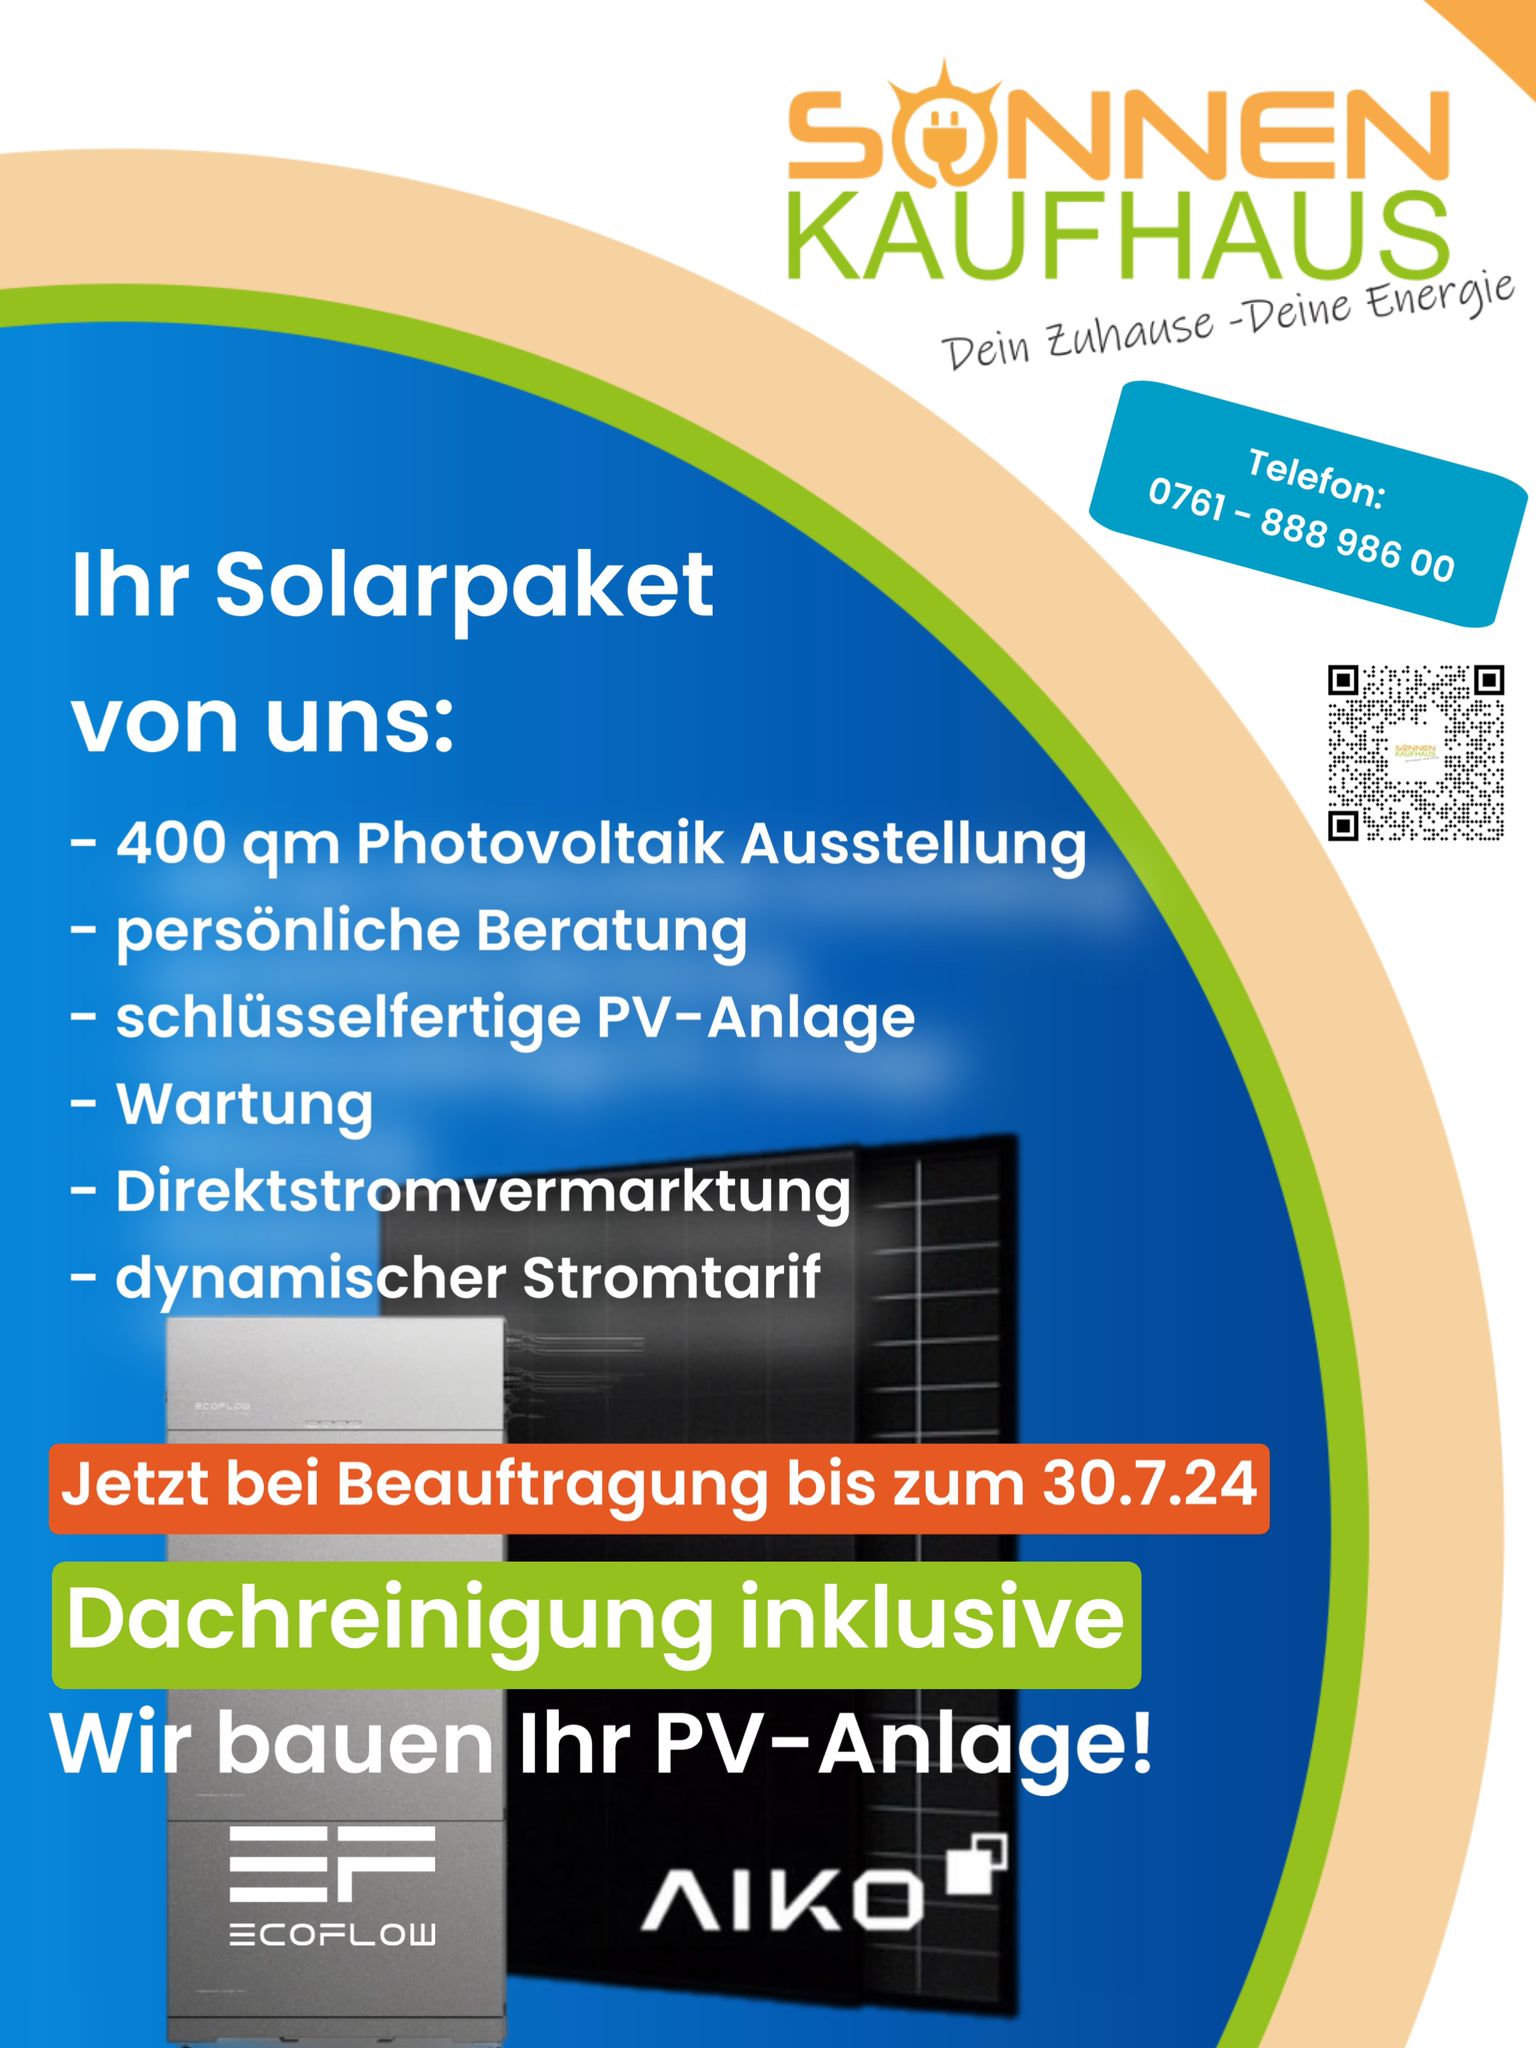 Das Solarpaket im Sonnenkaufhaus Onlineshop